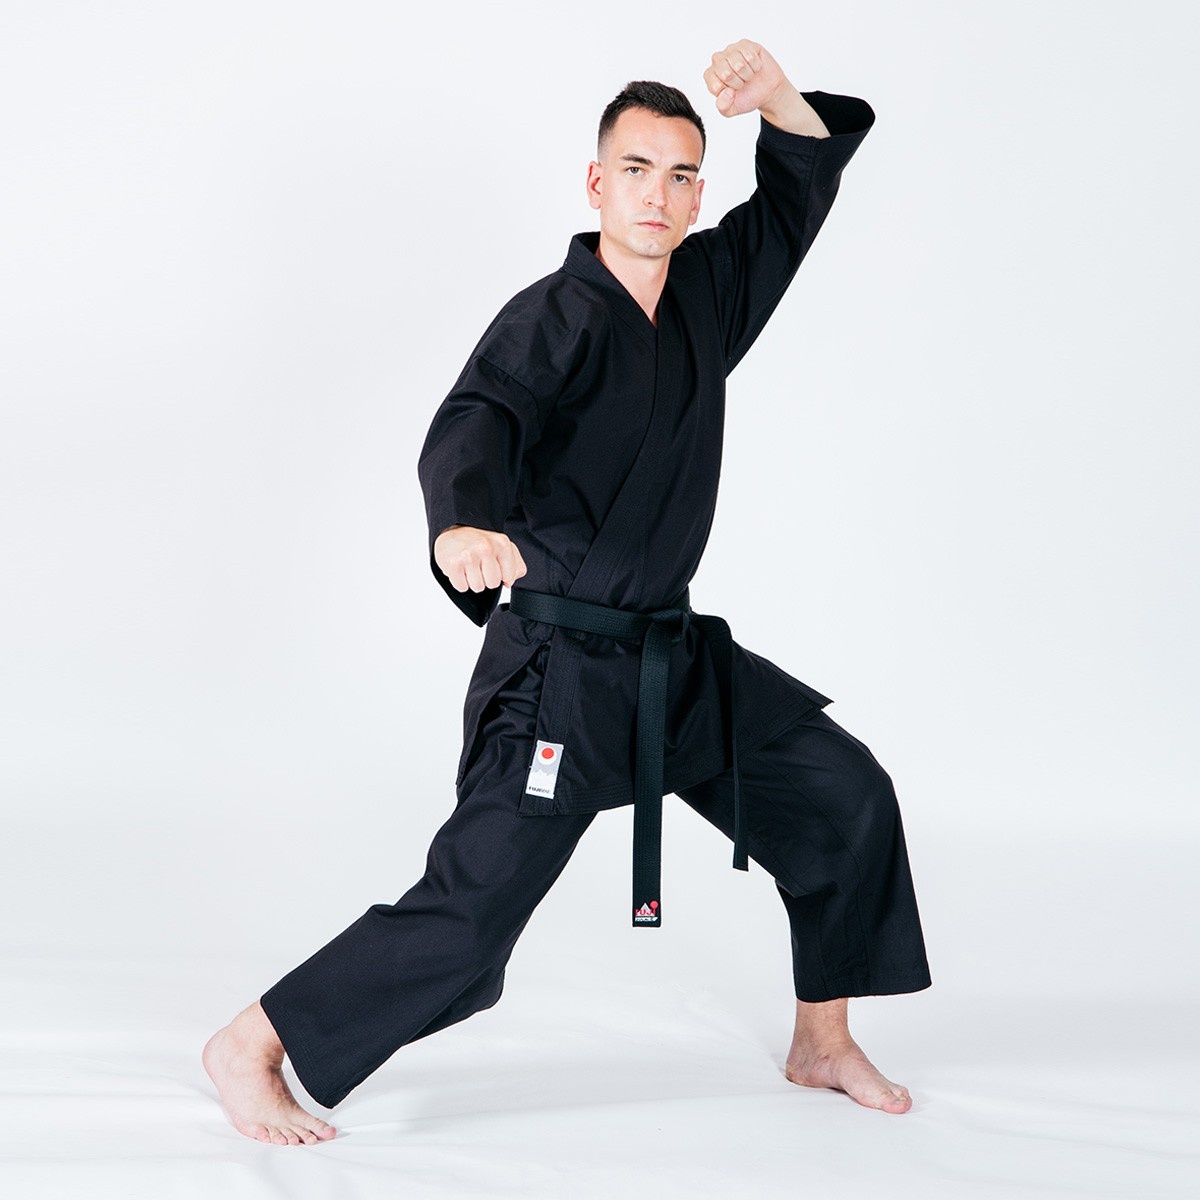 Shinsei Karate pak - 11 oz kopen?| Best Fightshop✓ - Best Fightshop -